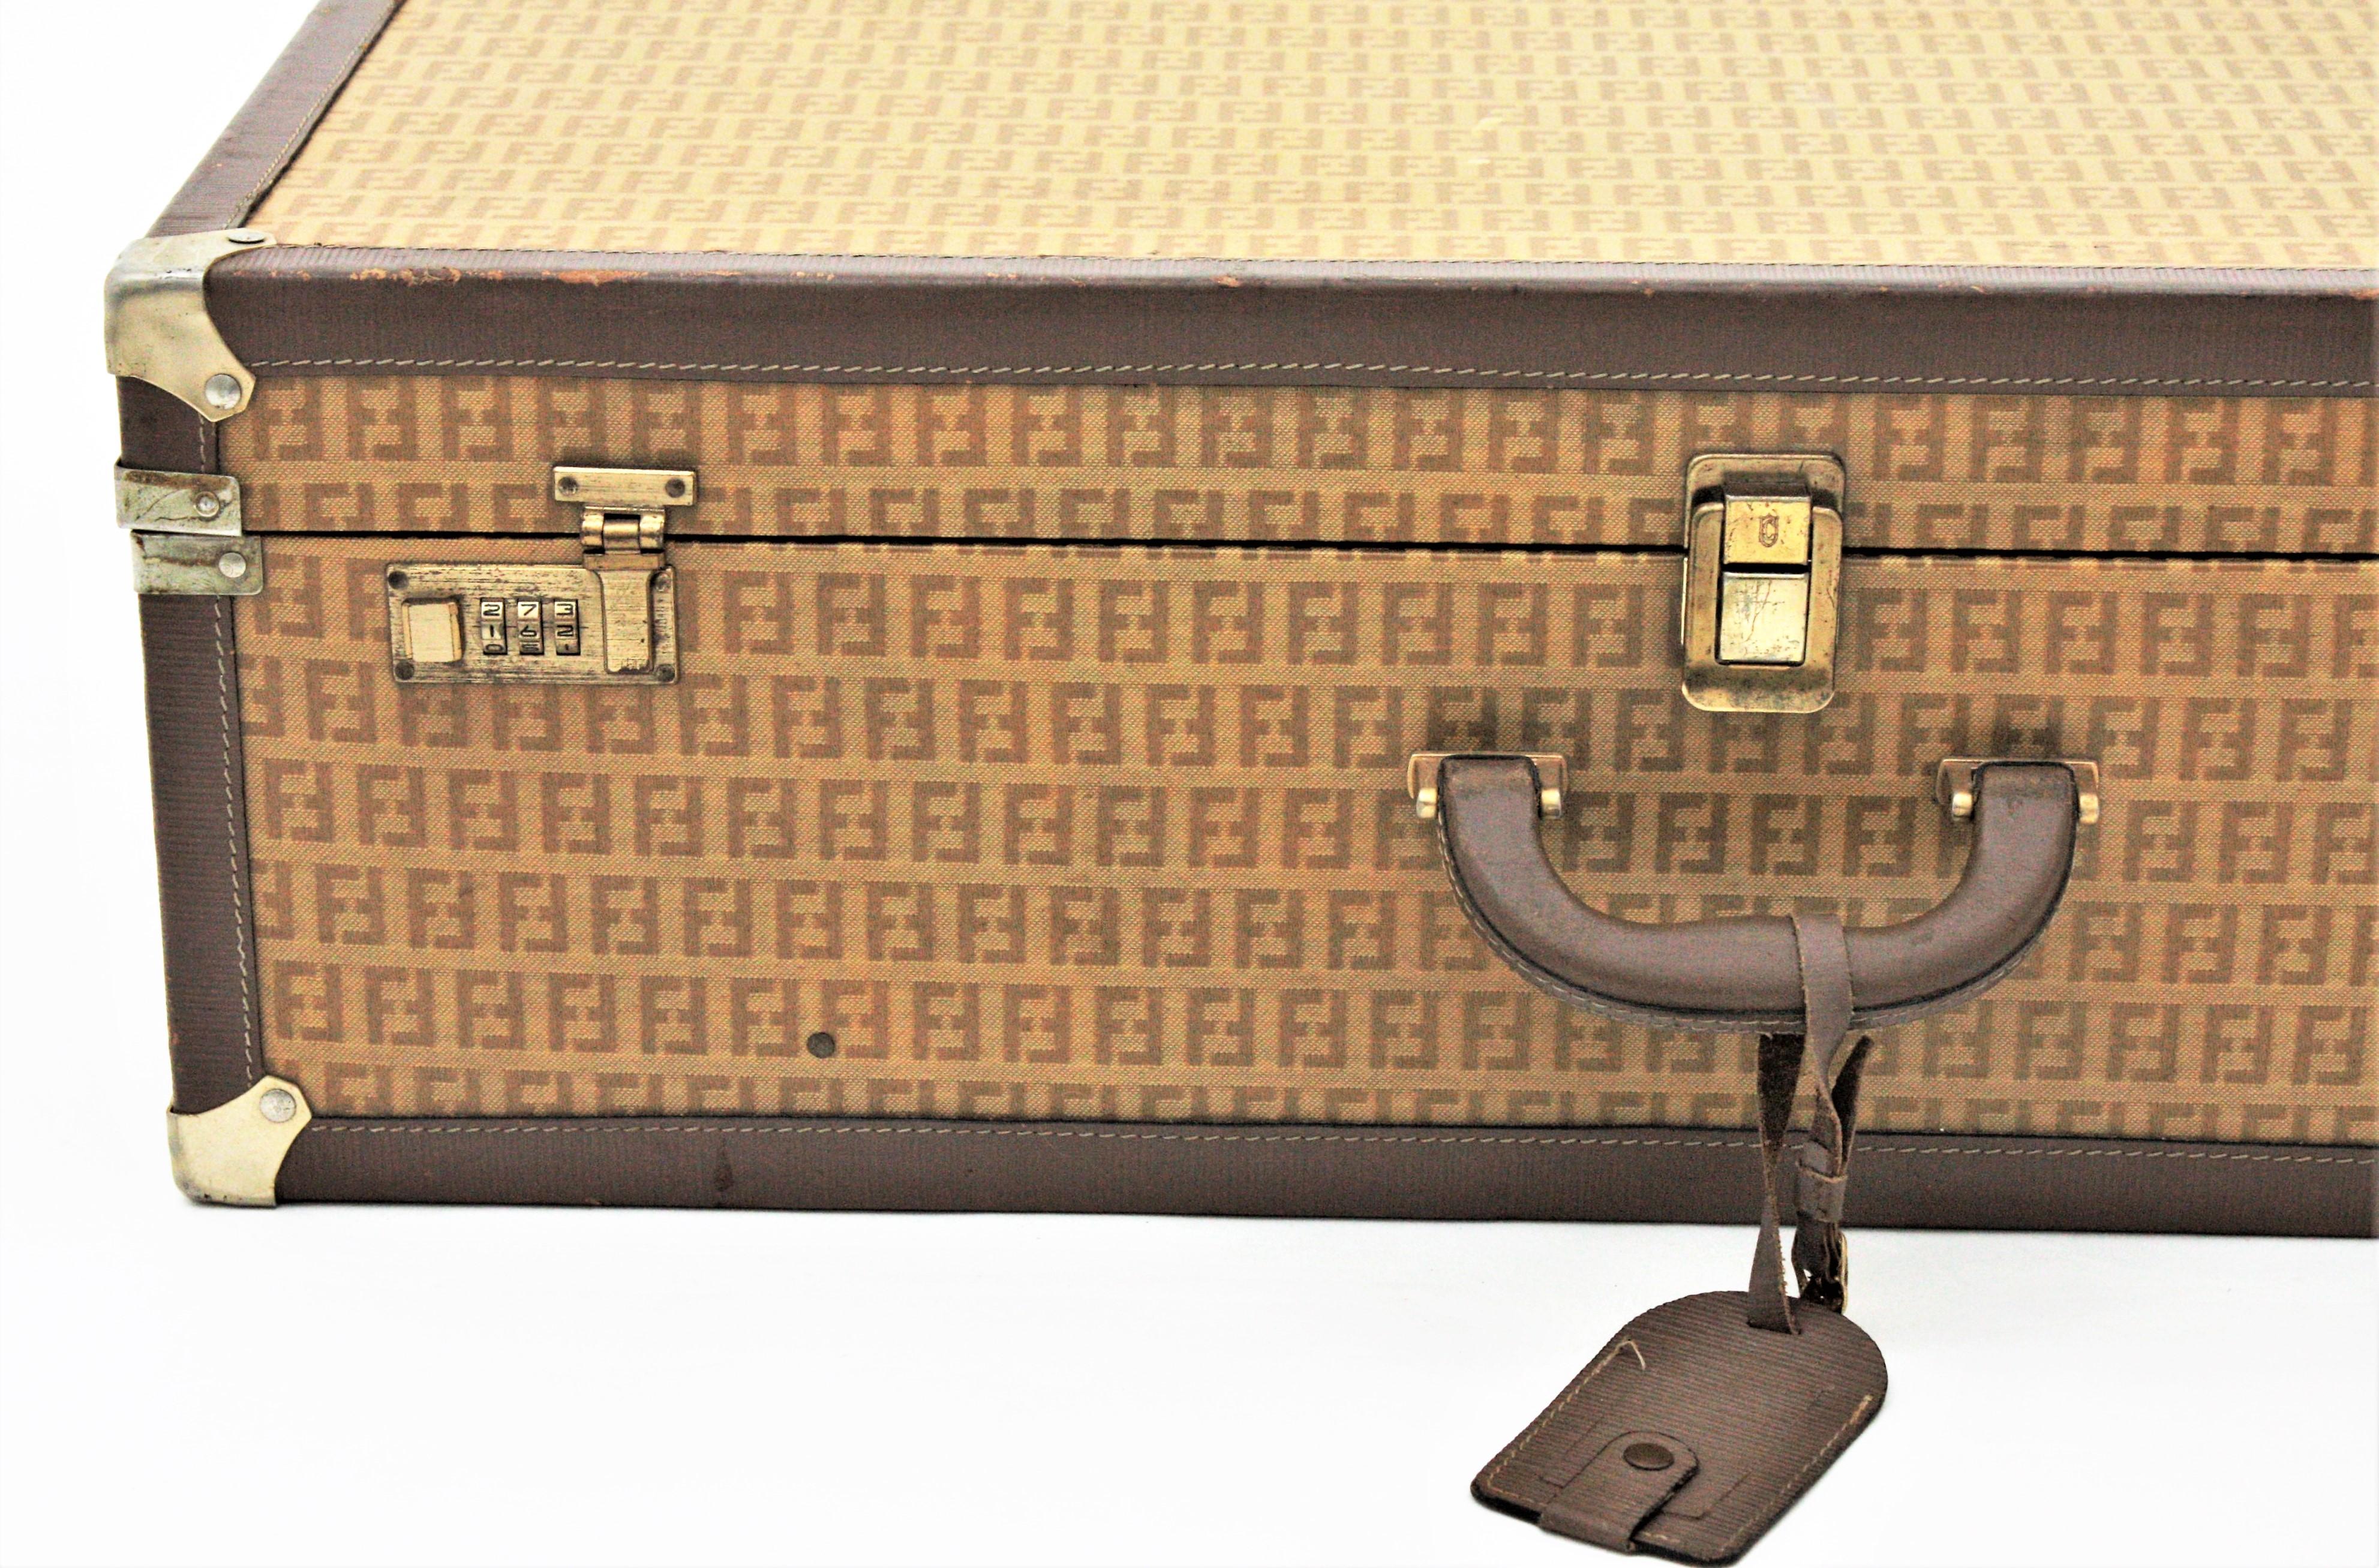 Fendi Zucca-Muster Epi Leder Vintage Luxus Hartschalenkoffer, 1970er Jahre
Großer Hartschalenkoffer von Fendi Zucca mit Monogramm. Das Gepäckstück mit Zucca-Muster wurde von dem italienischen Modedesigner Fendi entworfen. Italien 1970er Jahre
Dieser